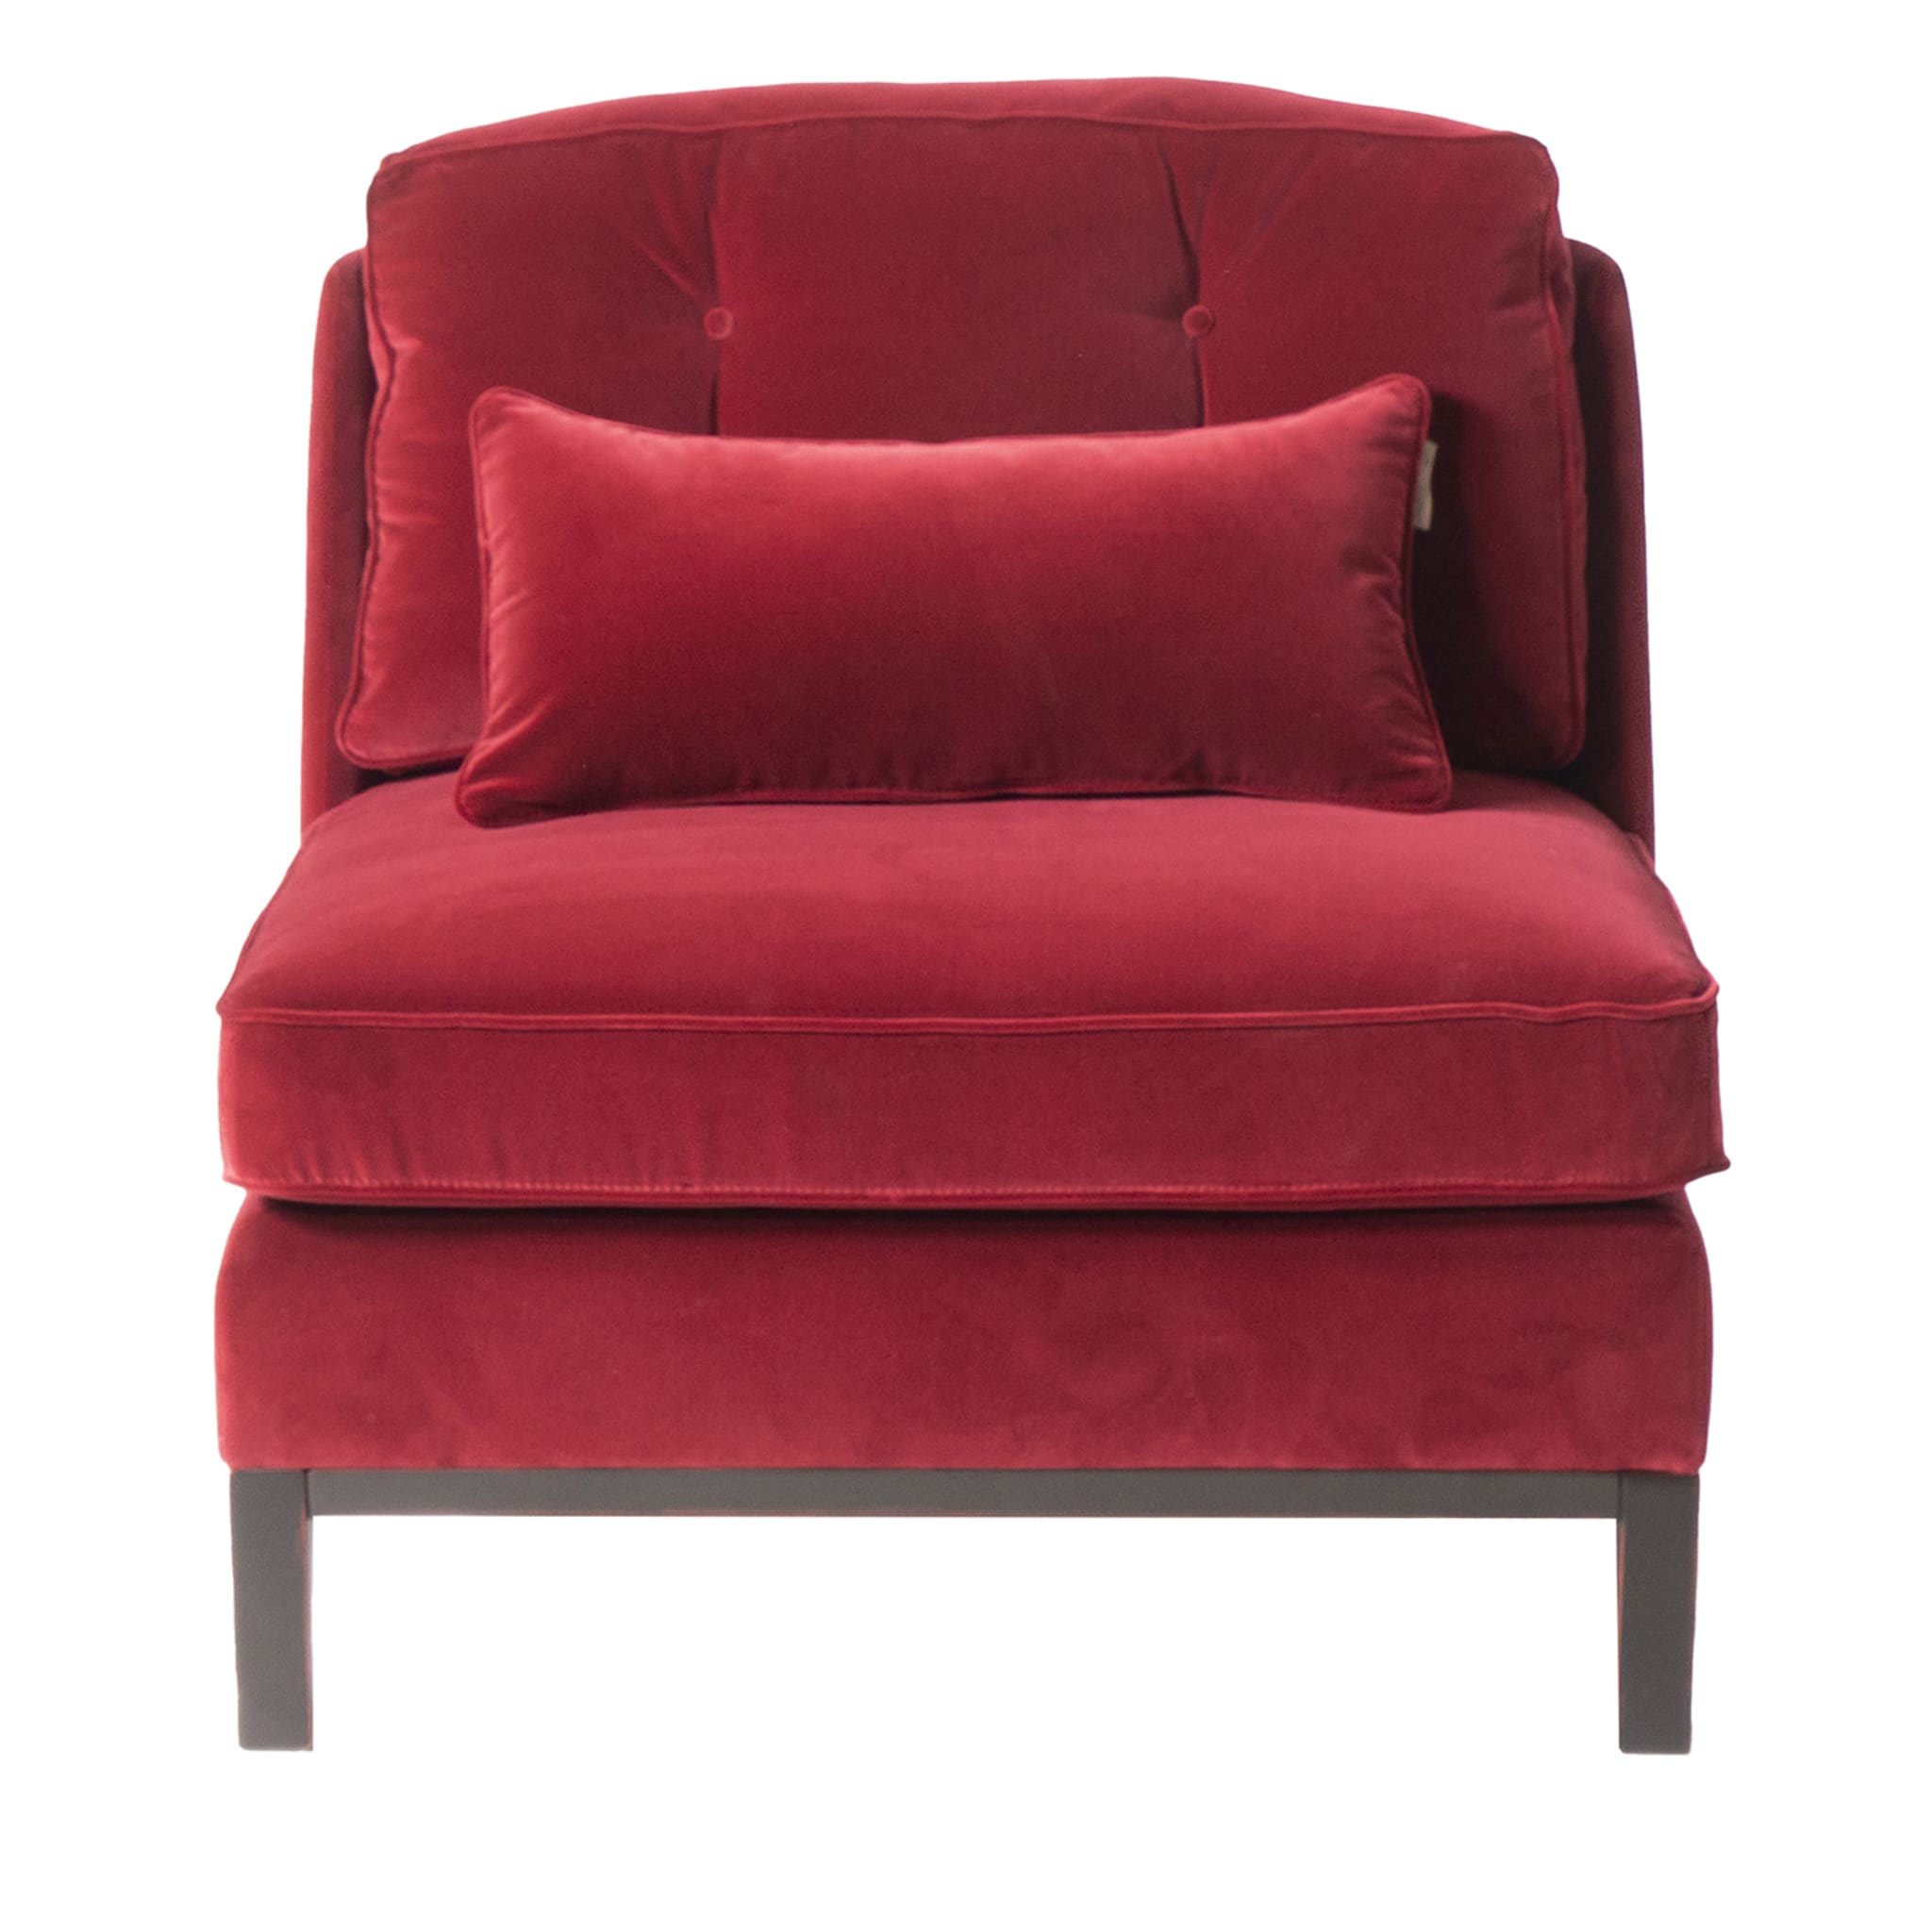 Roter Altieri-Sessel von Marco und Giulio Mantellassi  - Hauptansicht